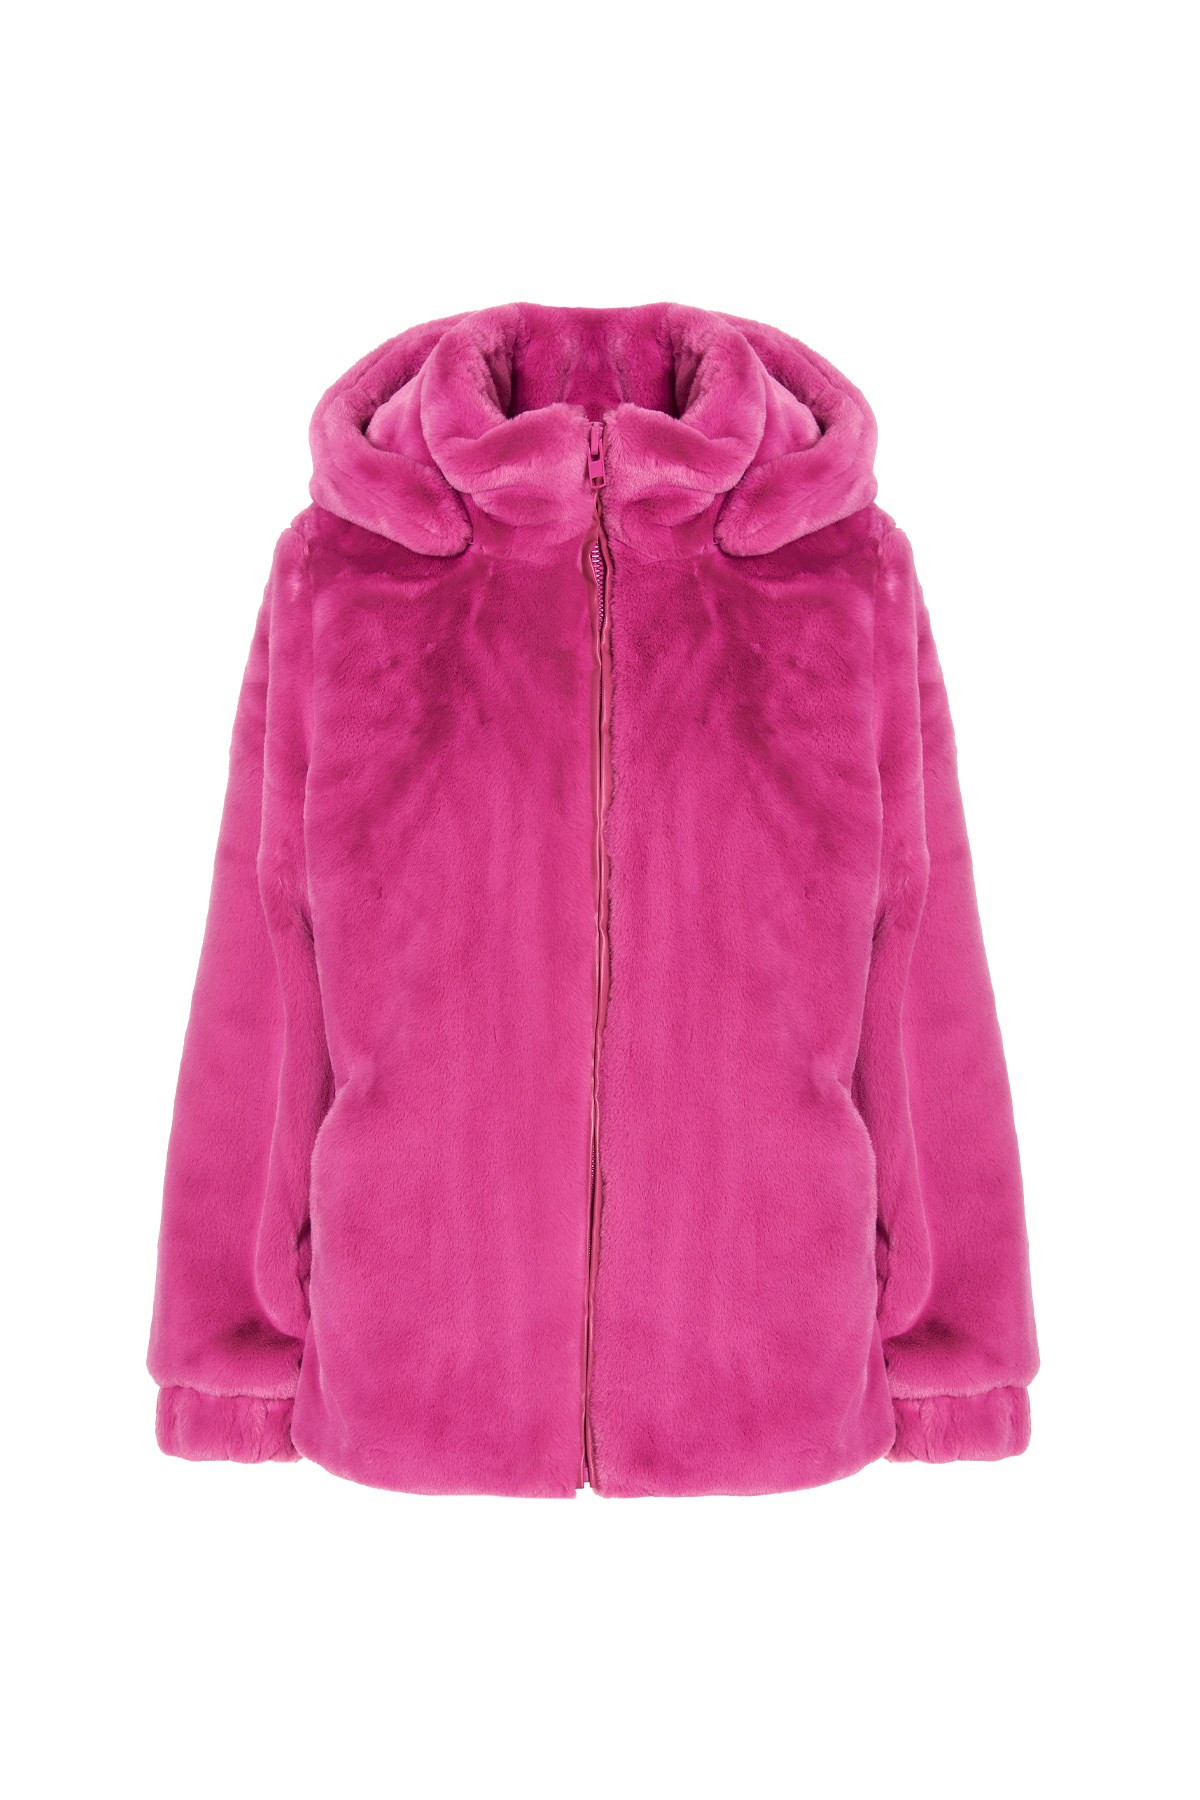 APPARIS ‘Maddie’ Hooded Eco Fur Coat